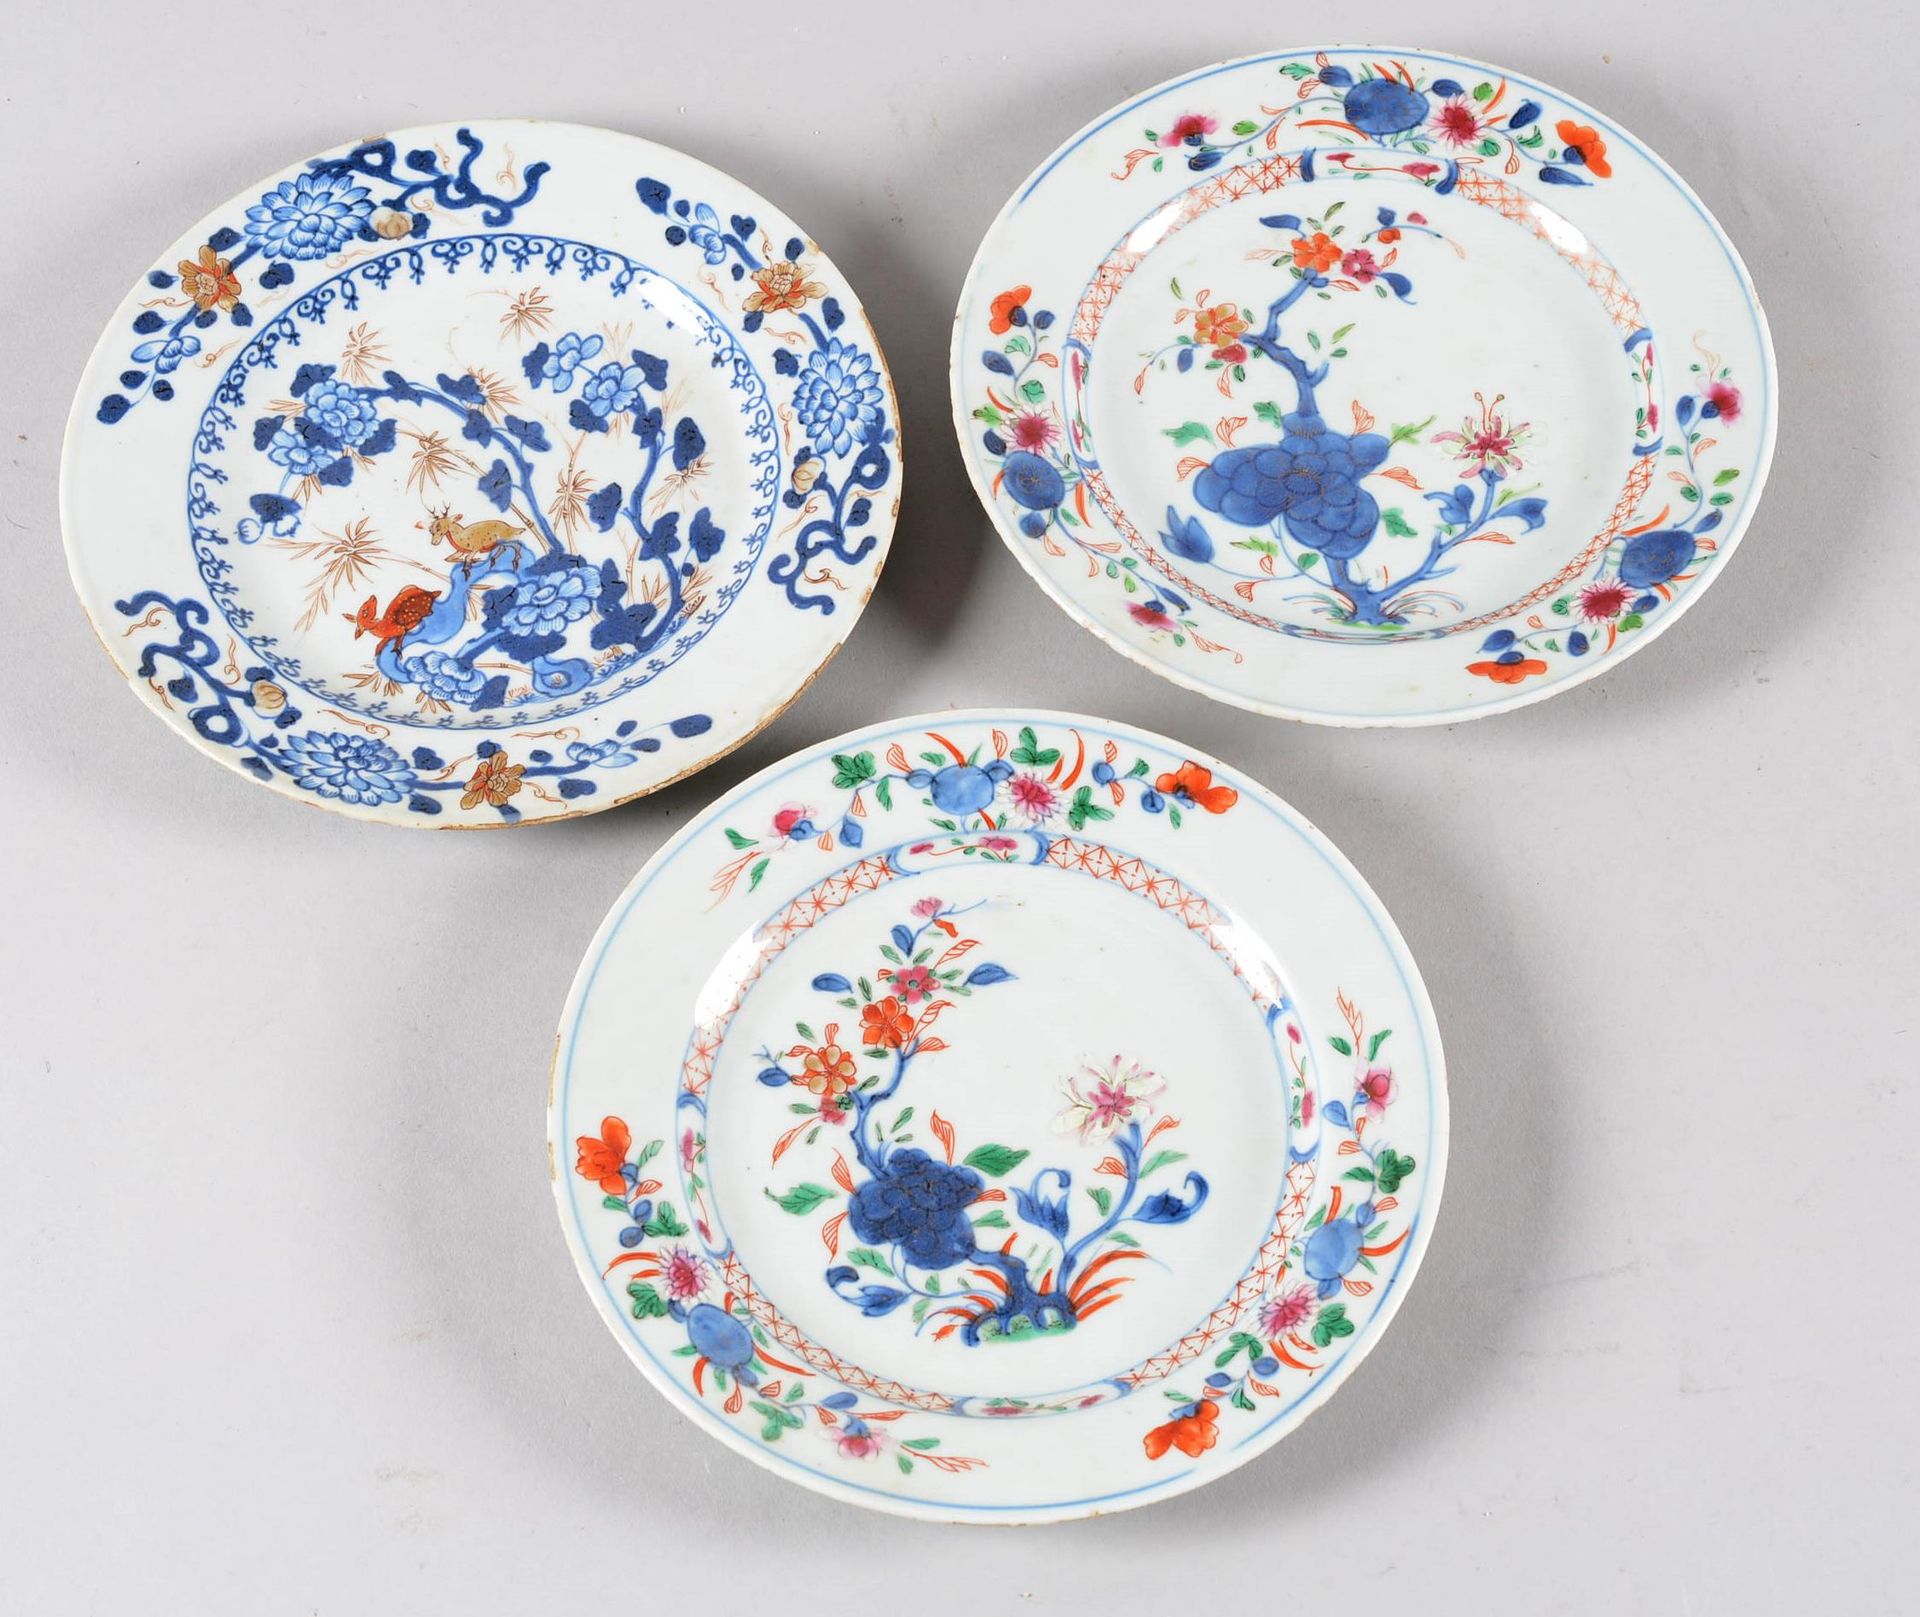 Suite de trois assiettes en porcelaine CHINA.

Suite of three porcelain plates o&hellip;